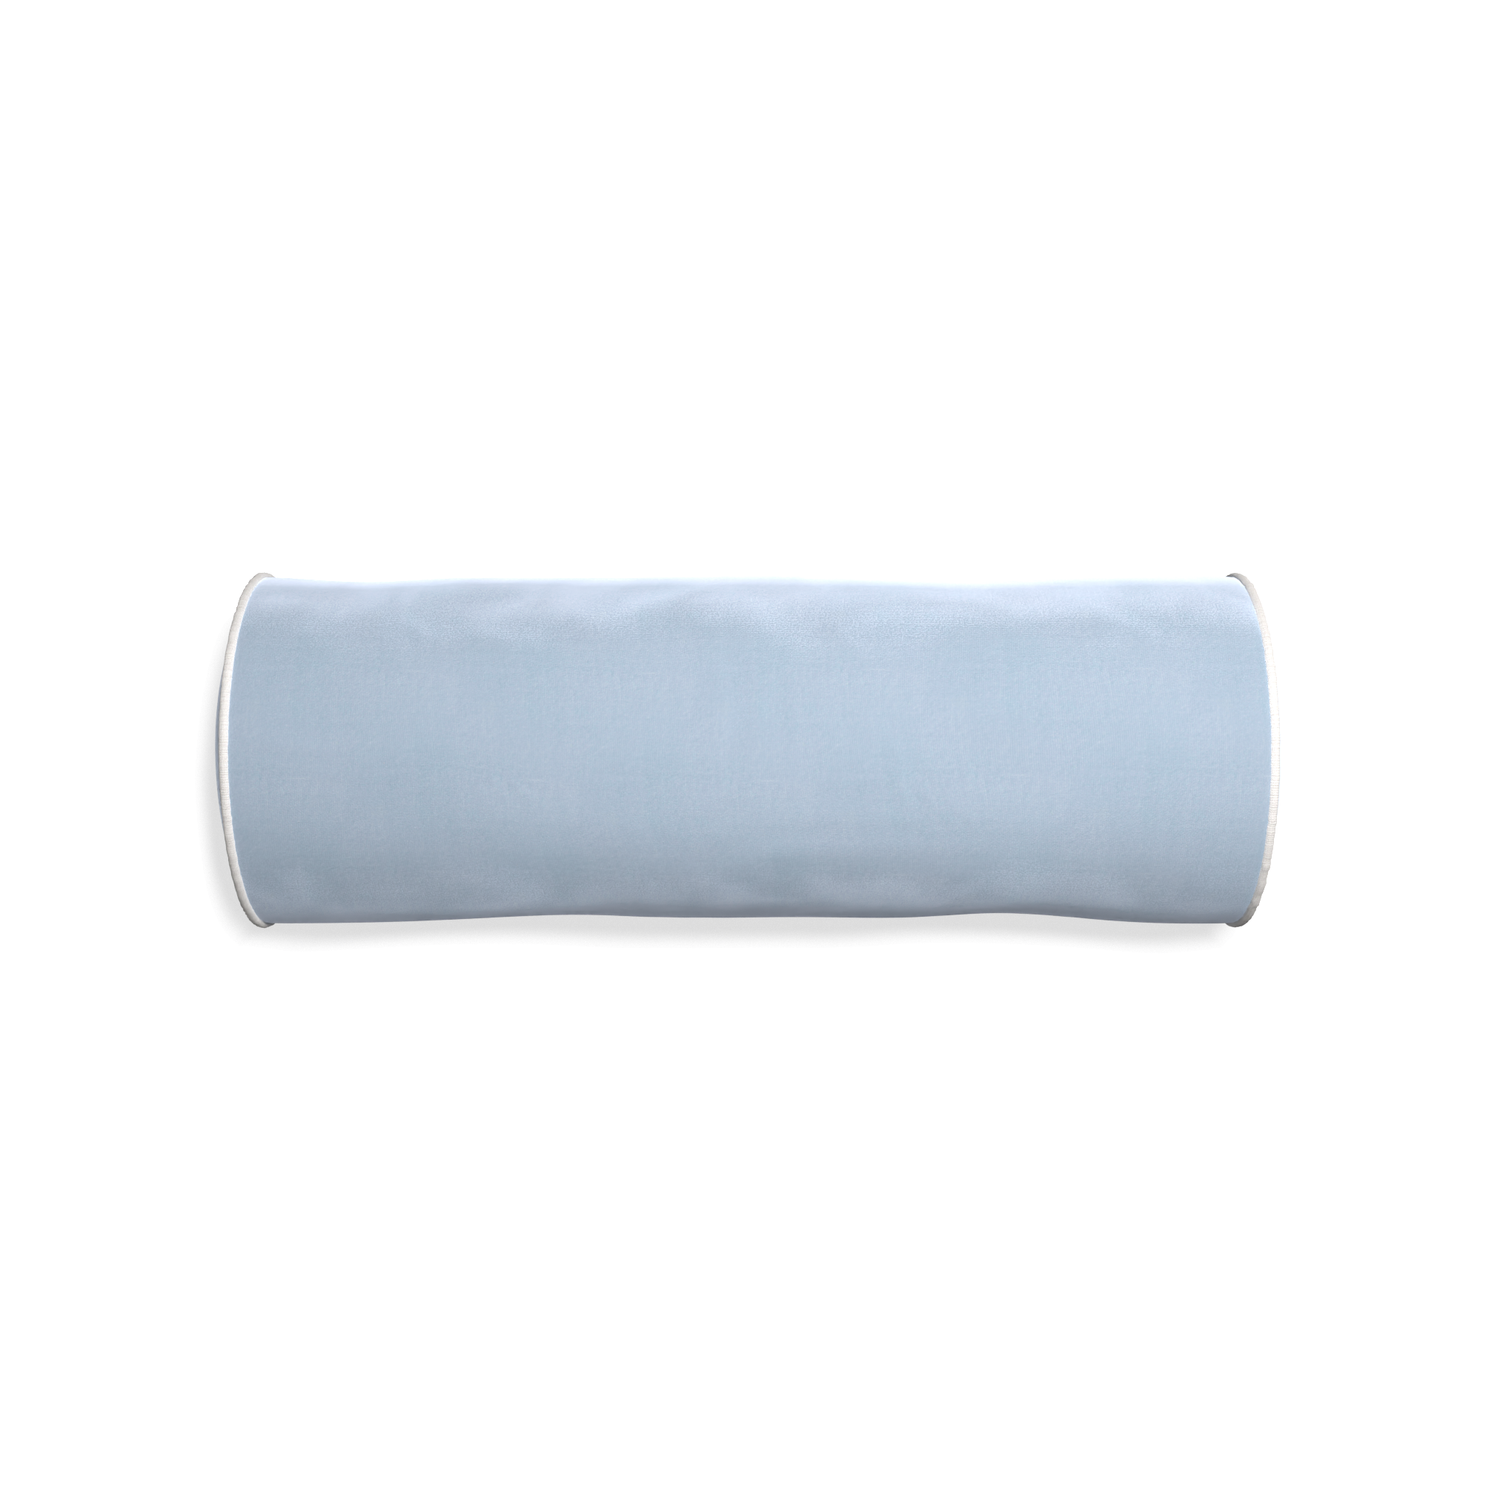 Bolster sky velvet custom pillow with snow piping on white background